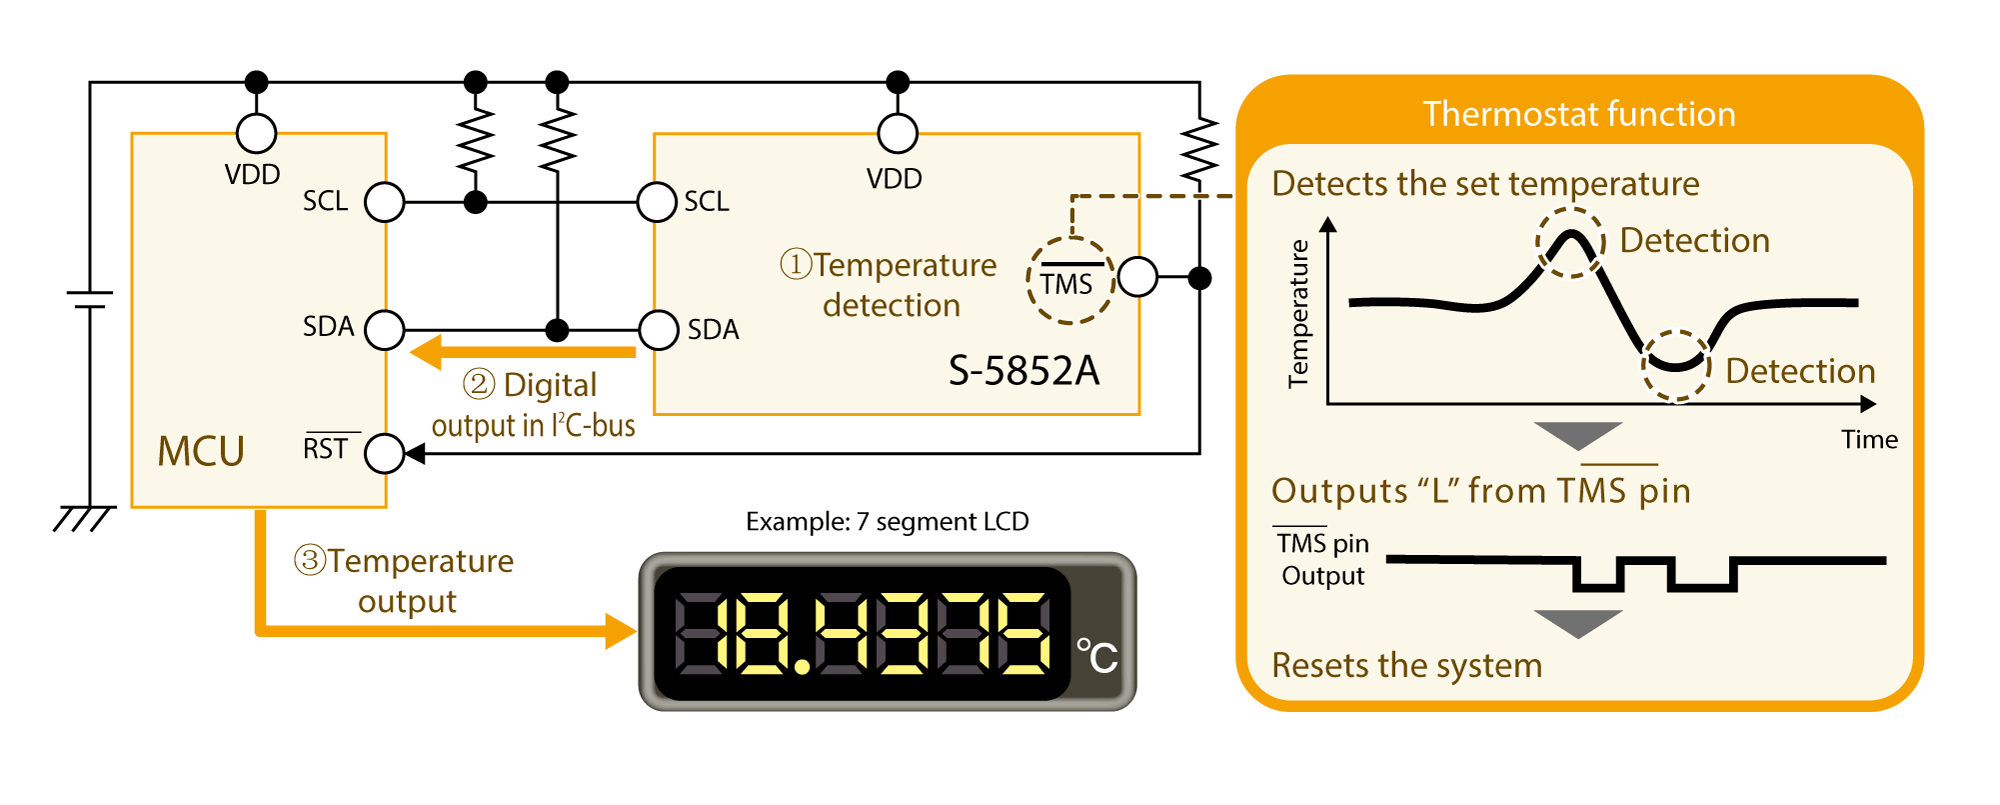 Digital temperature sensor